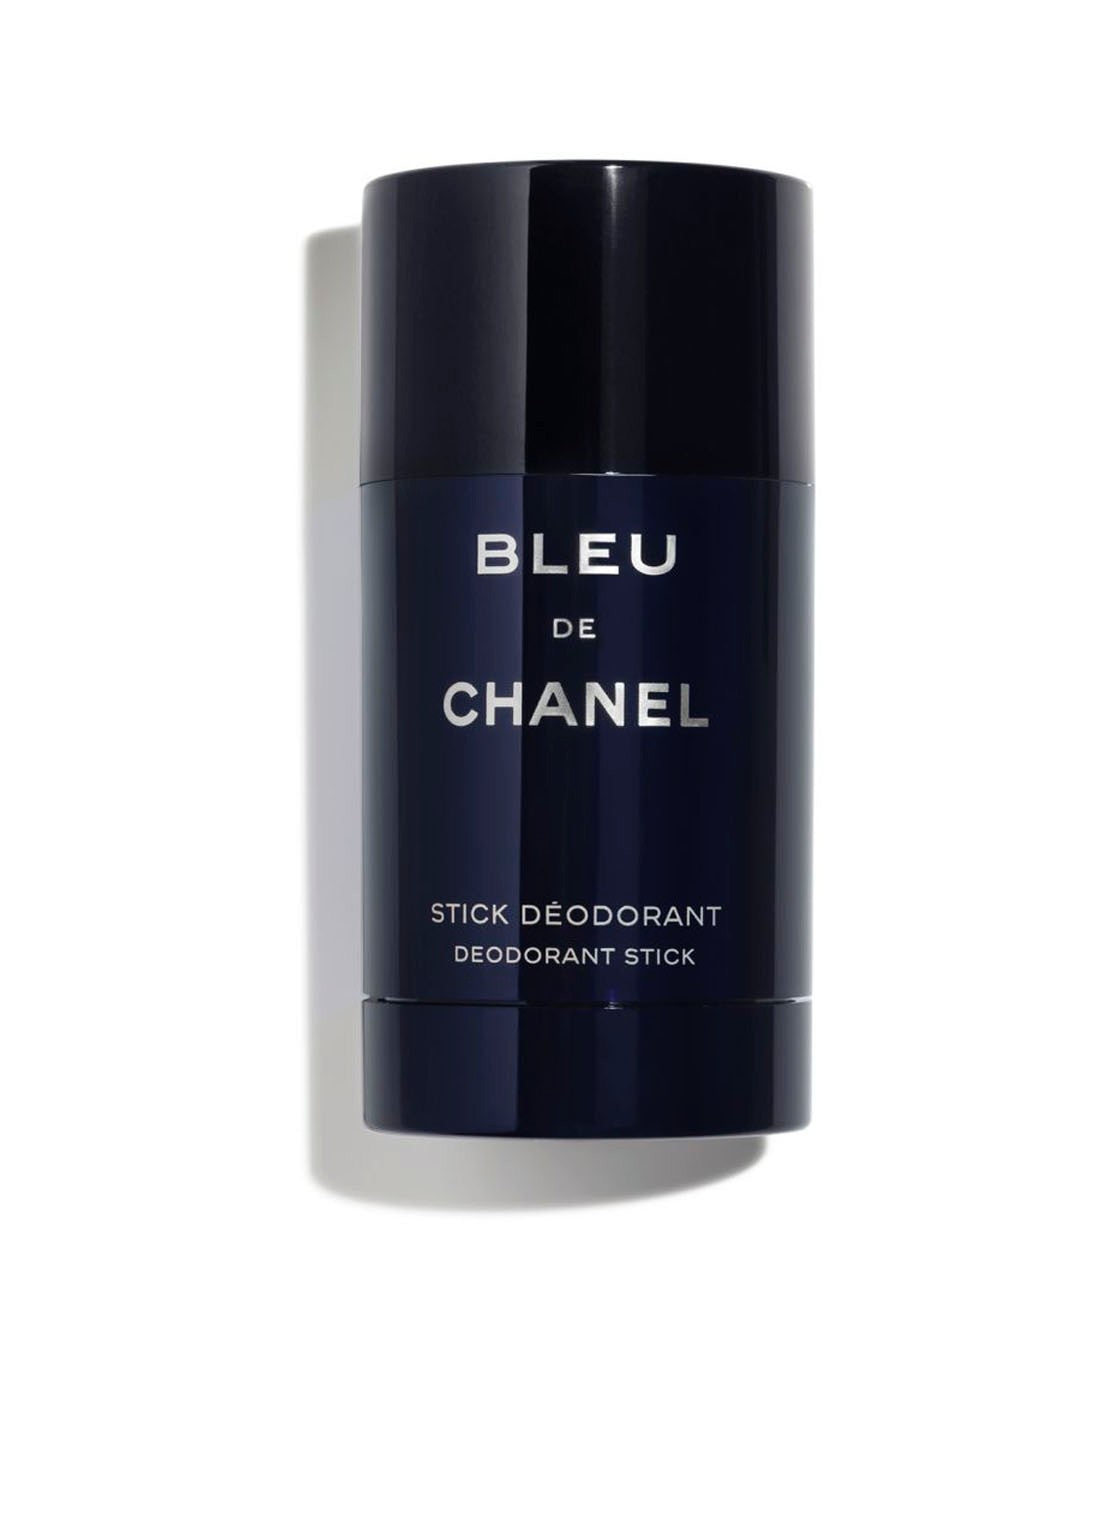 Bleu de Chanel Deodorantstick